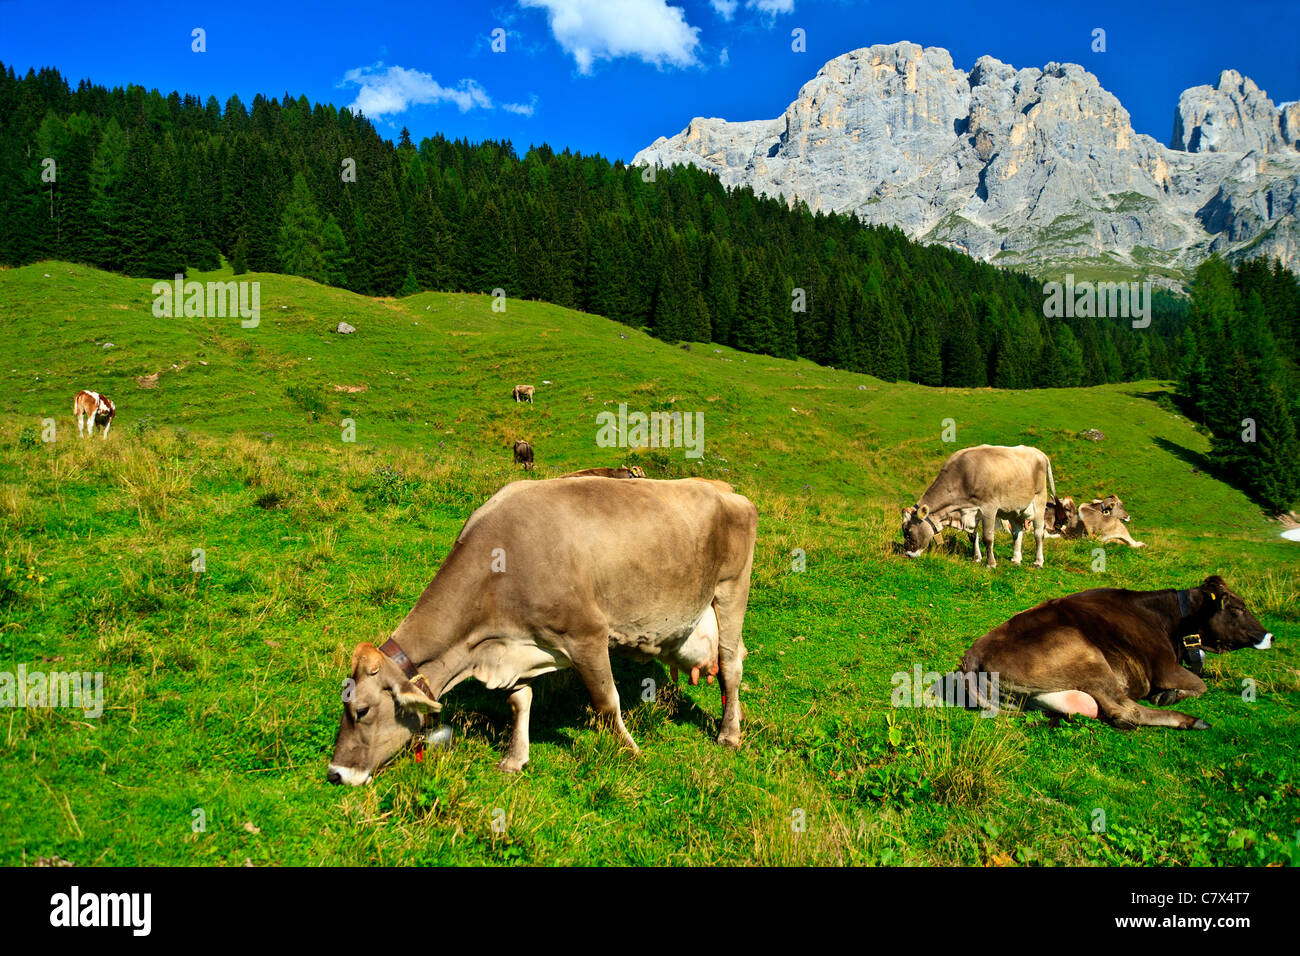 Les bovins laitiers en Italie Dolomites pâturage avec des cloches de vache Banque D'Images